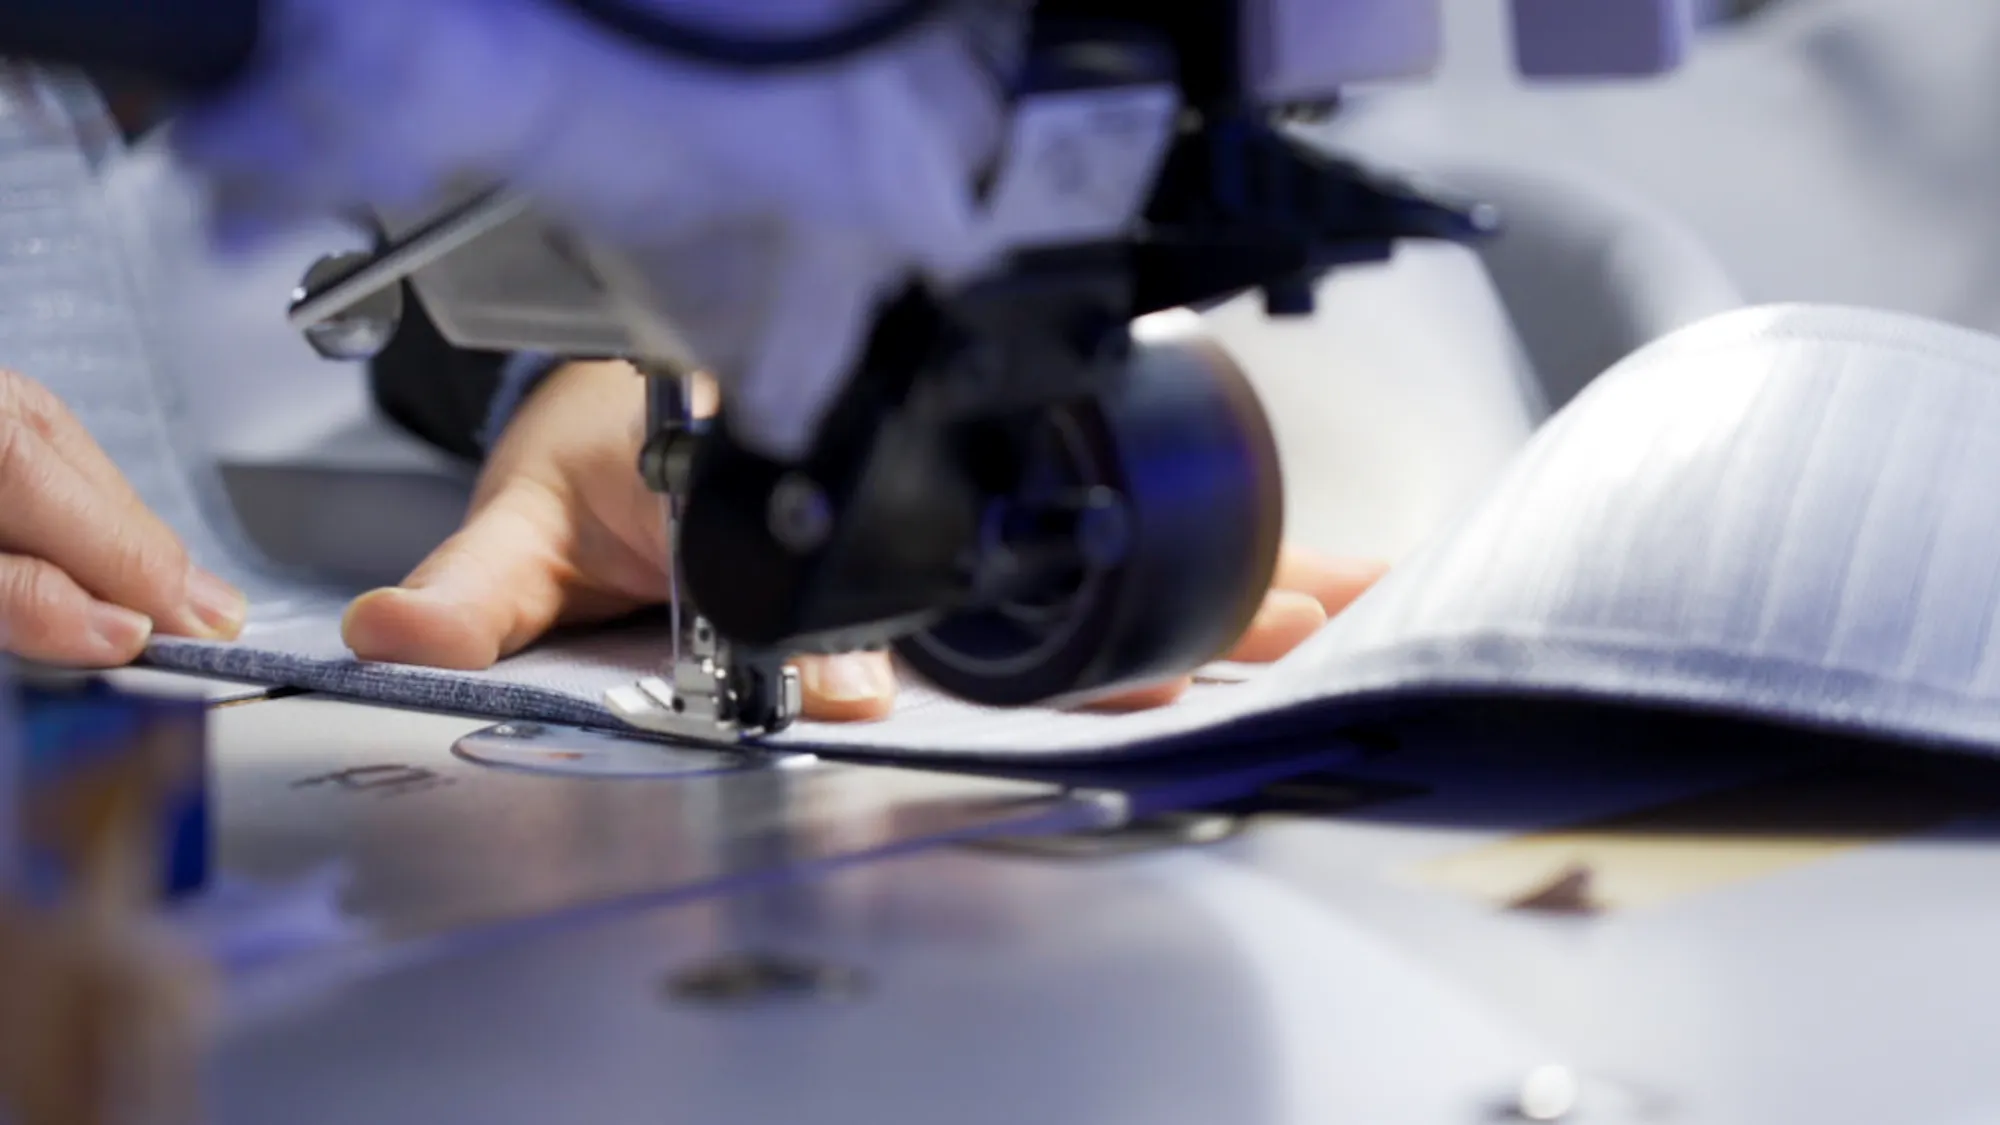 ラジエルの縫製工場でミシン作業をしている手元の写真